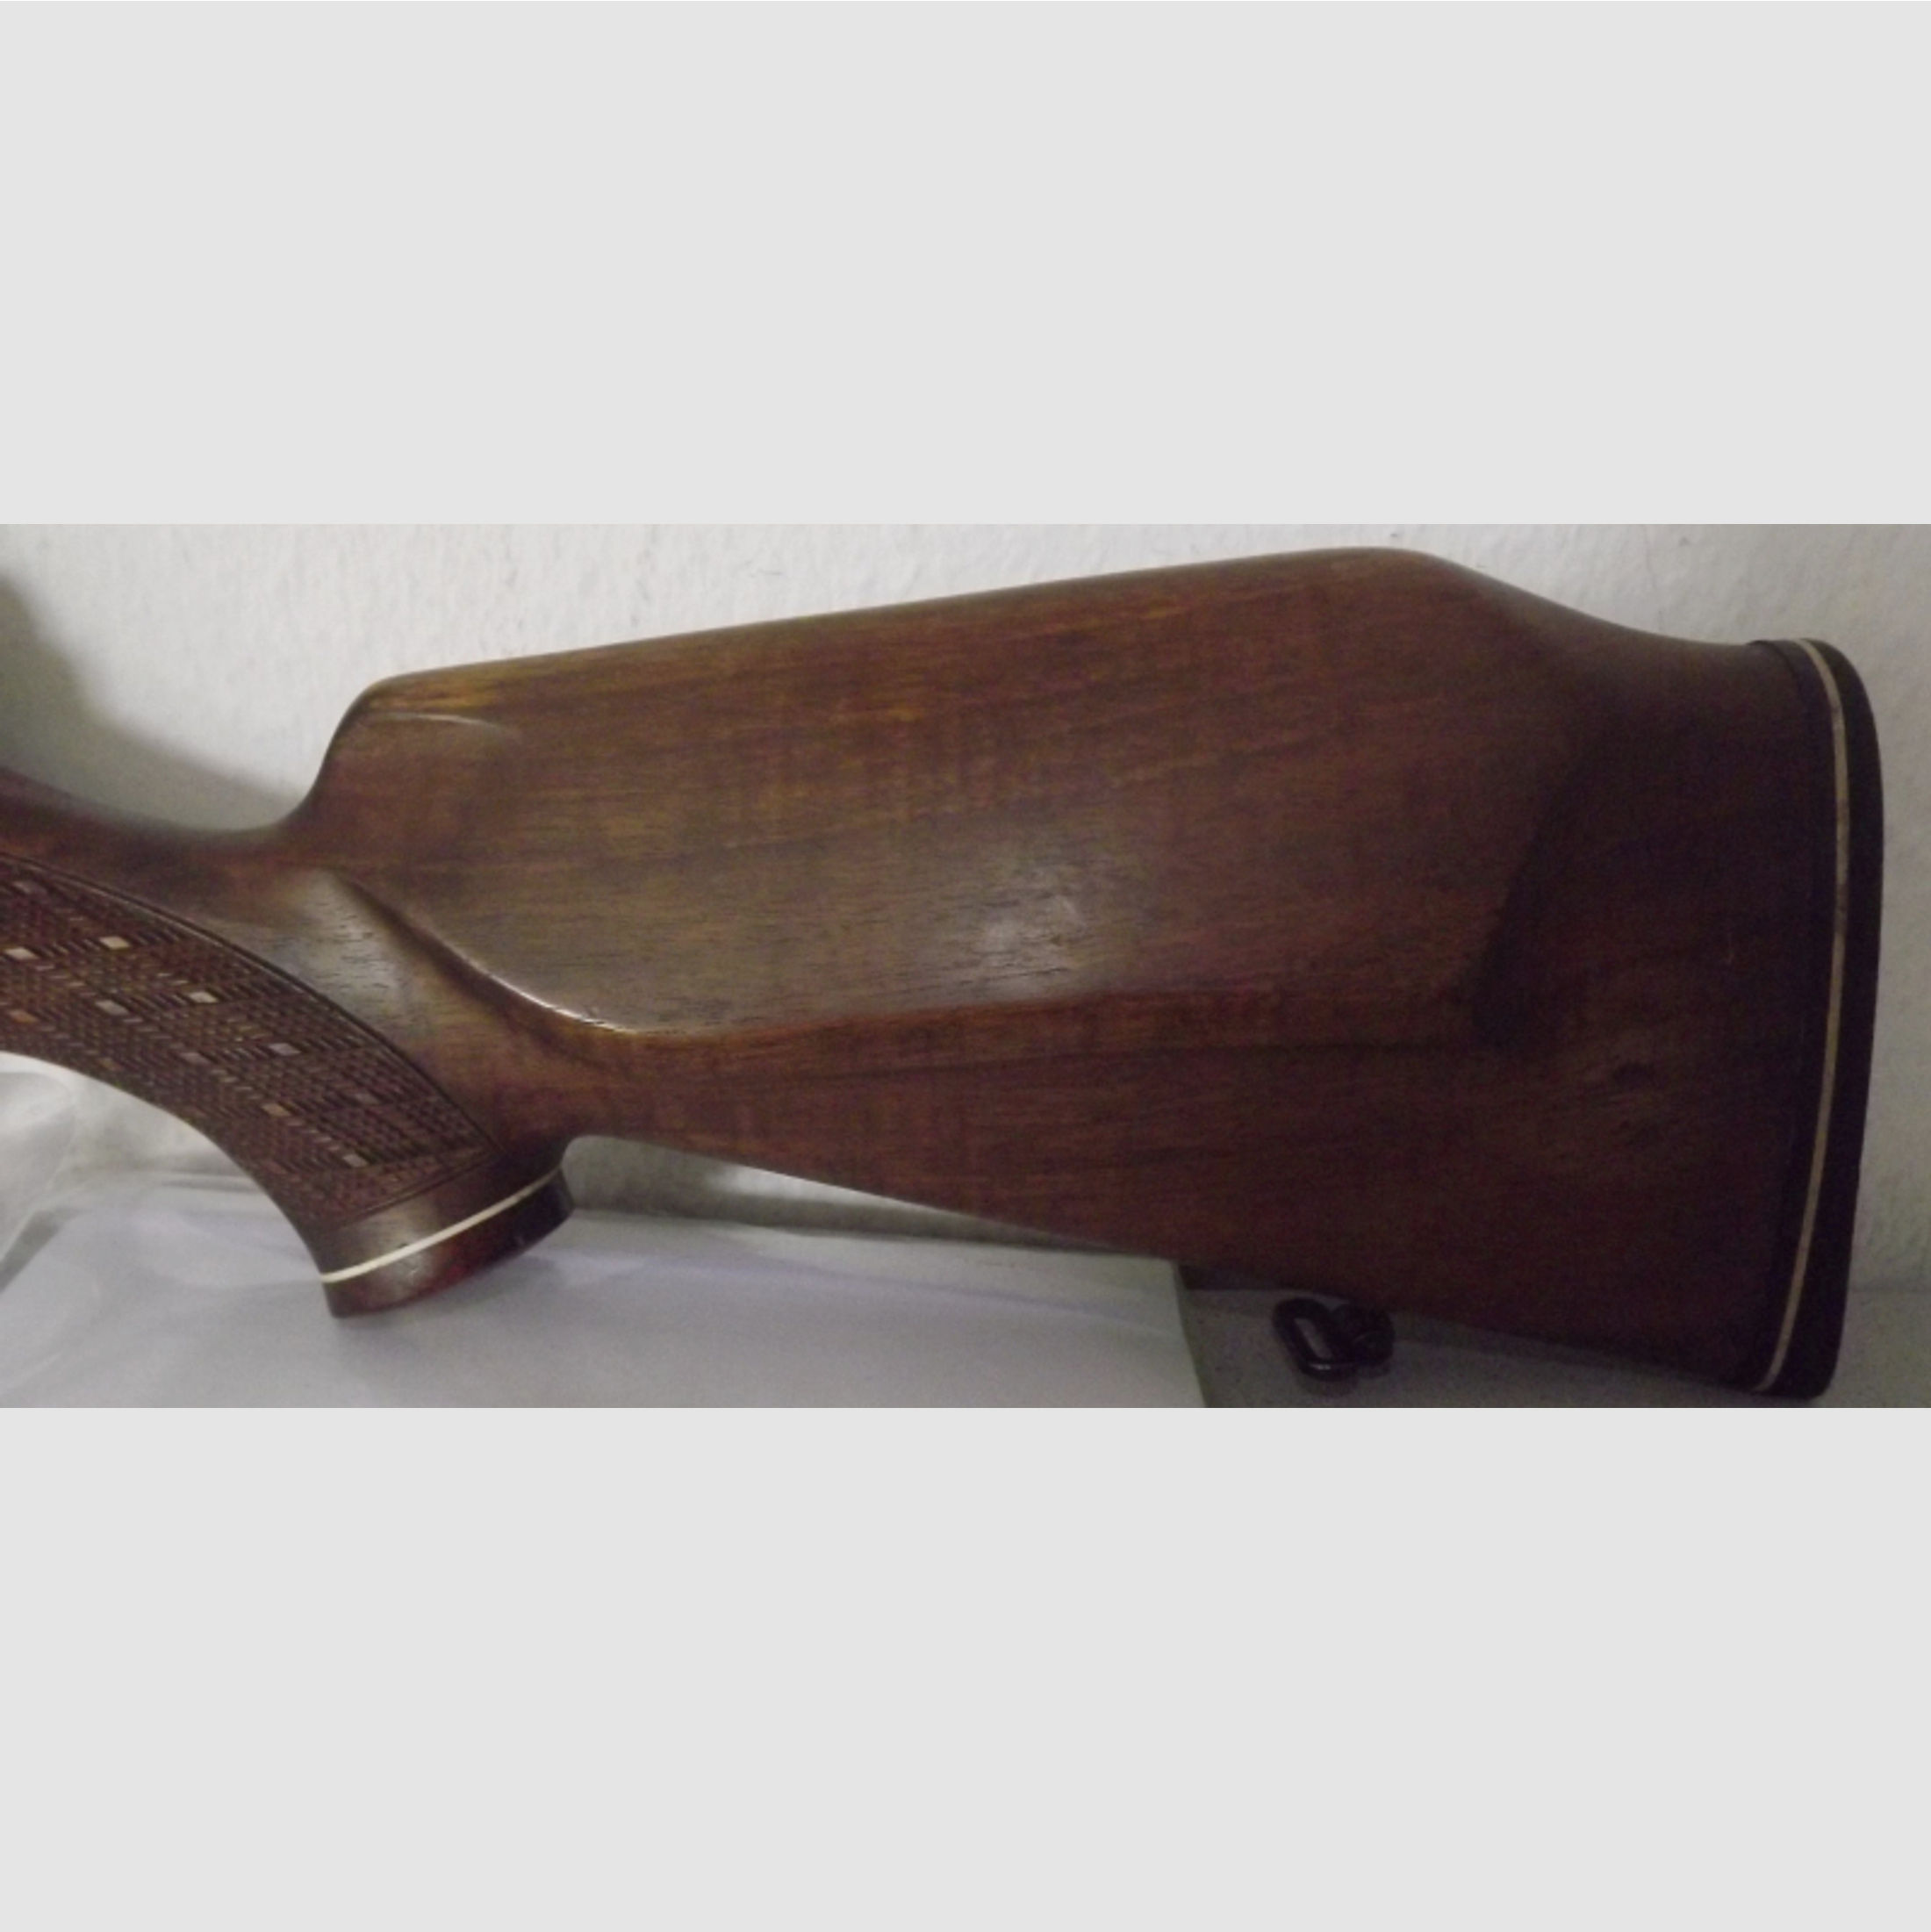 Mauser 66 Magnum 7x66SEv.Hofe